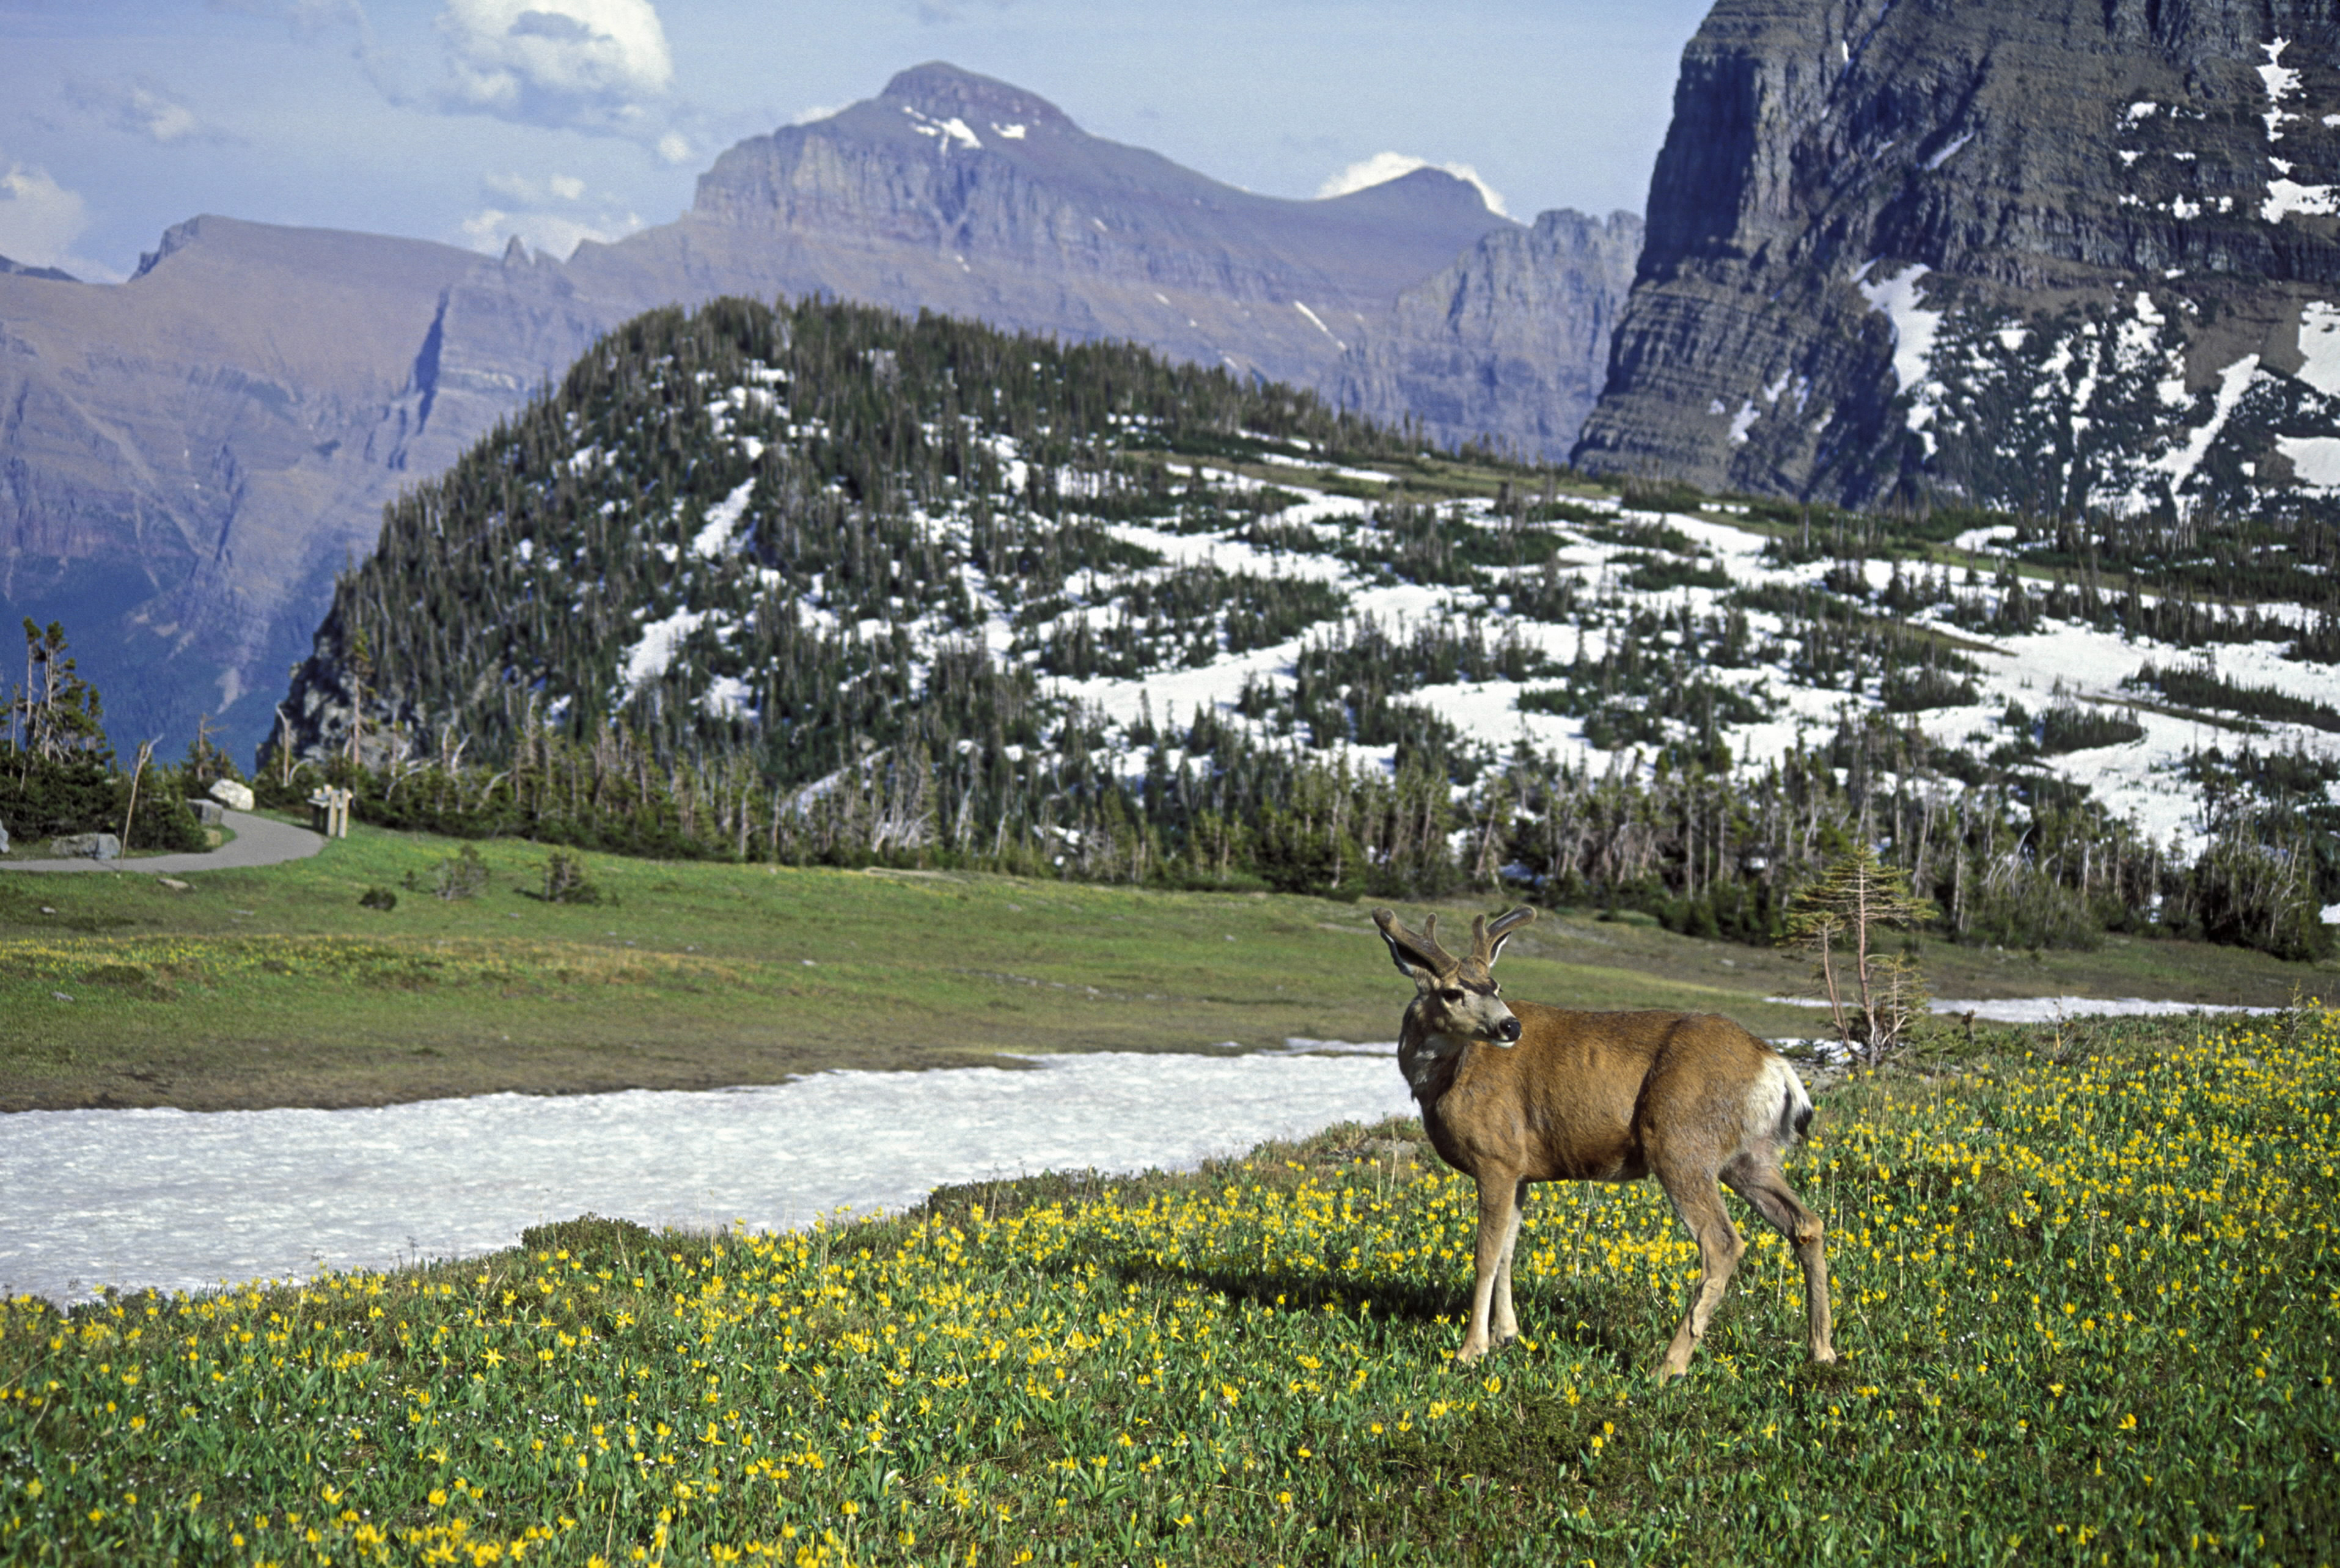 Glacier National Parkâ€™s Top Wow Spots - Sunset Magazine